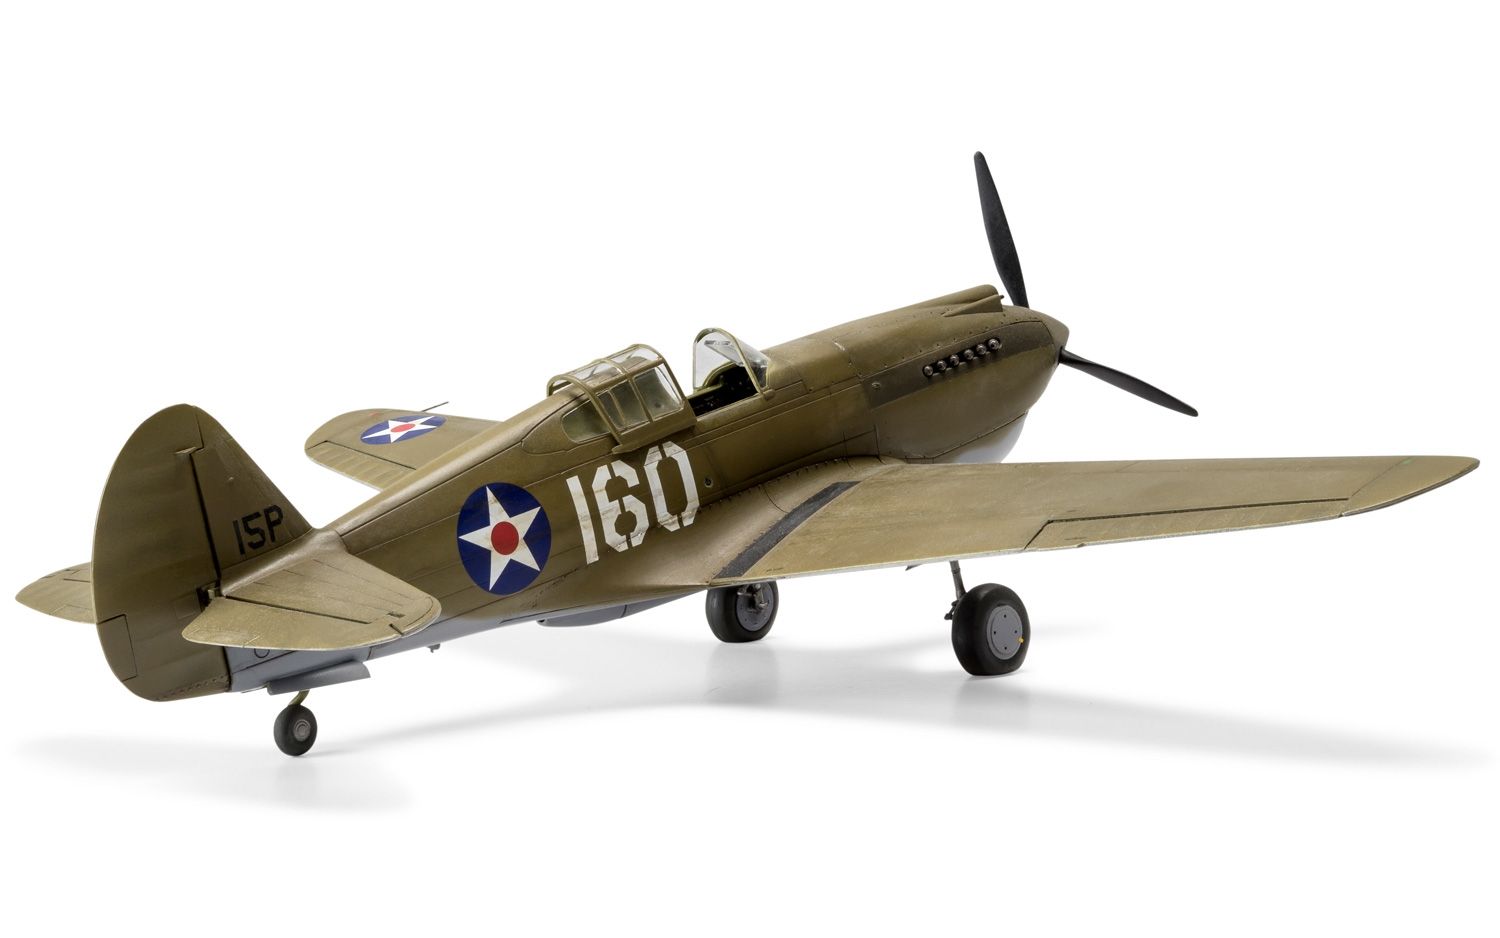 A05130 Airfix | Curtiss P-40B Warhawk 1:48 - plastic model kit